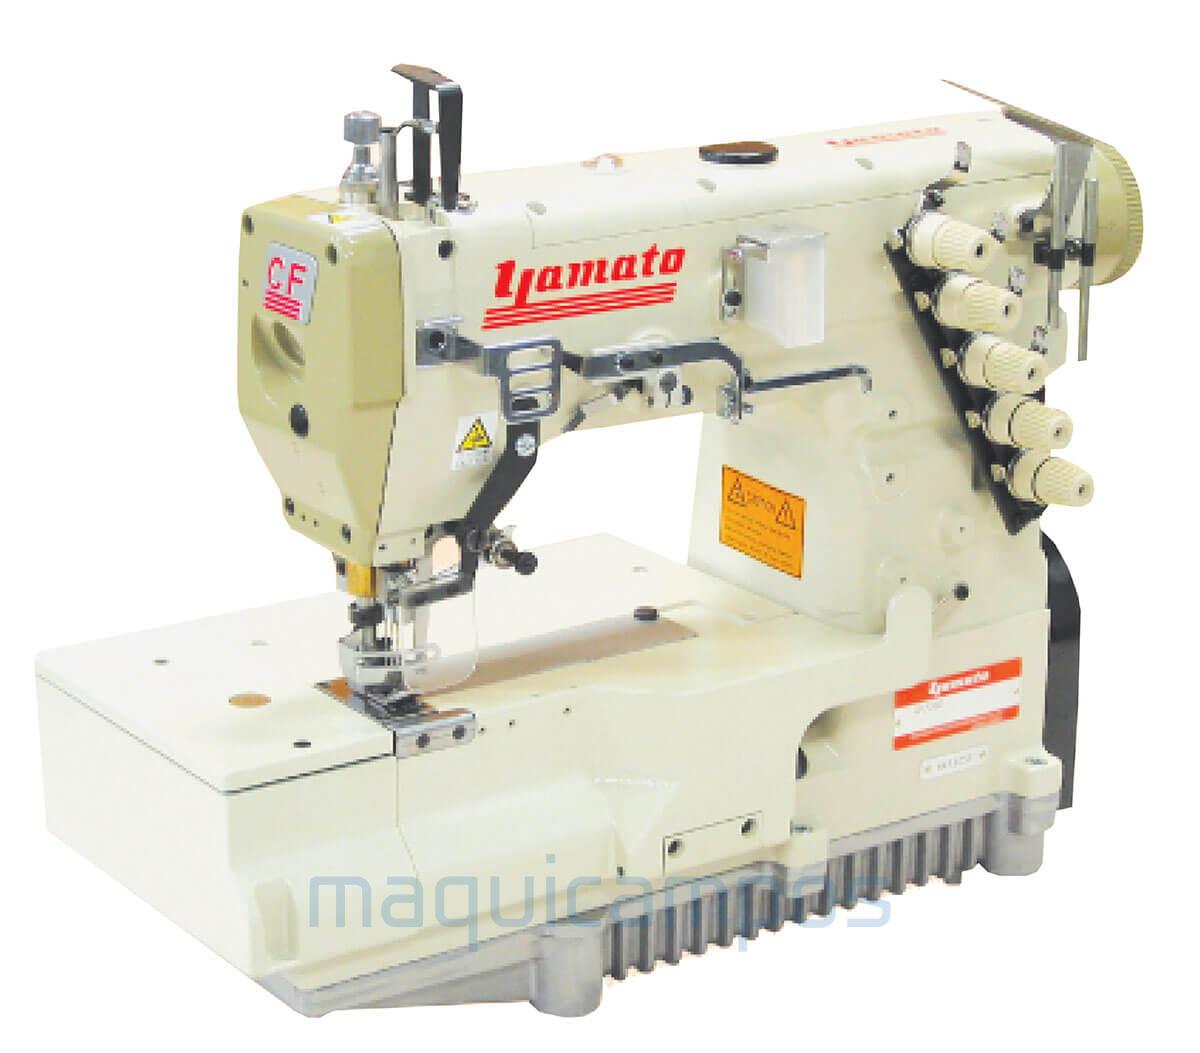 Yamato CF2303M-156  Interlock Sewing Machine